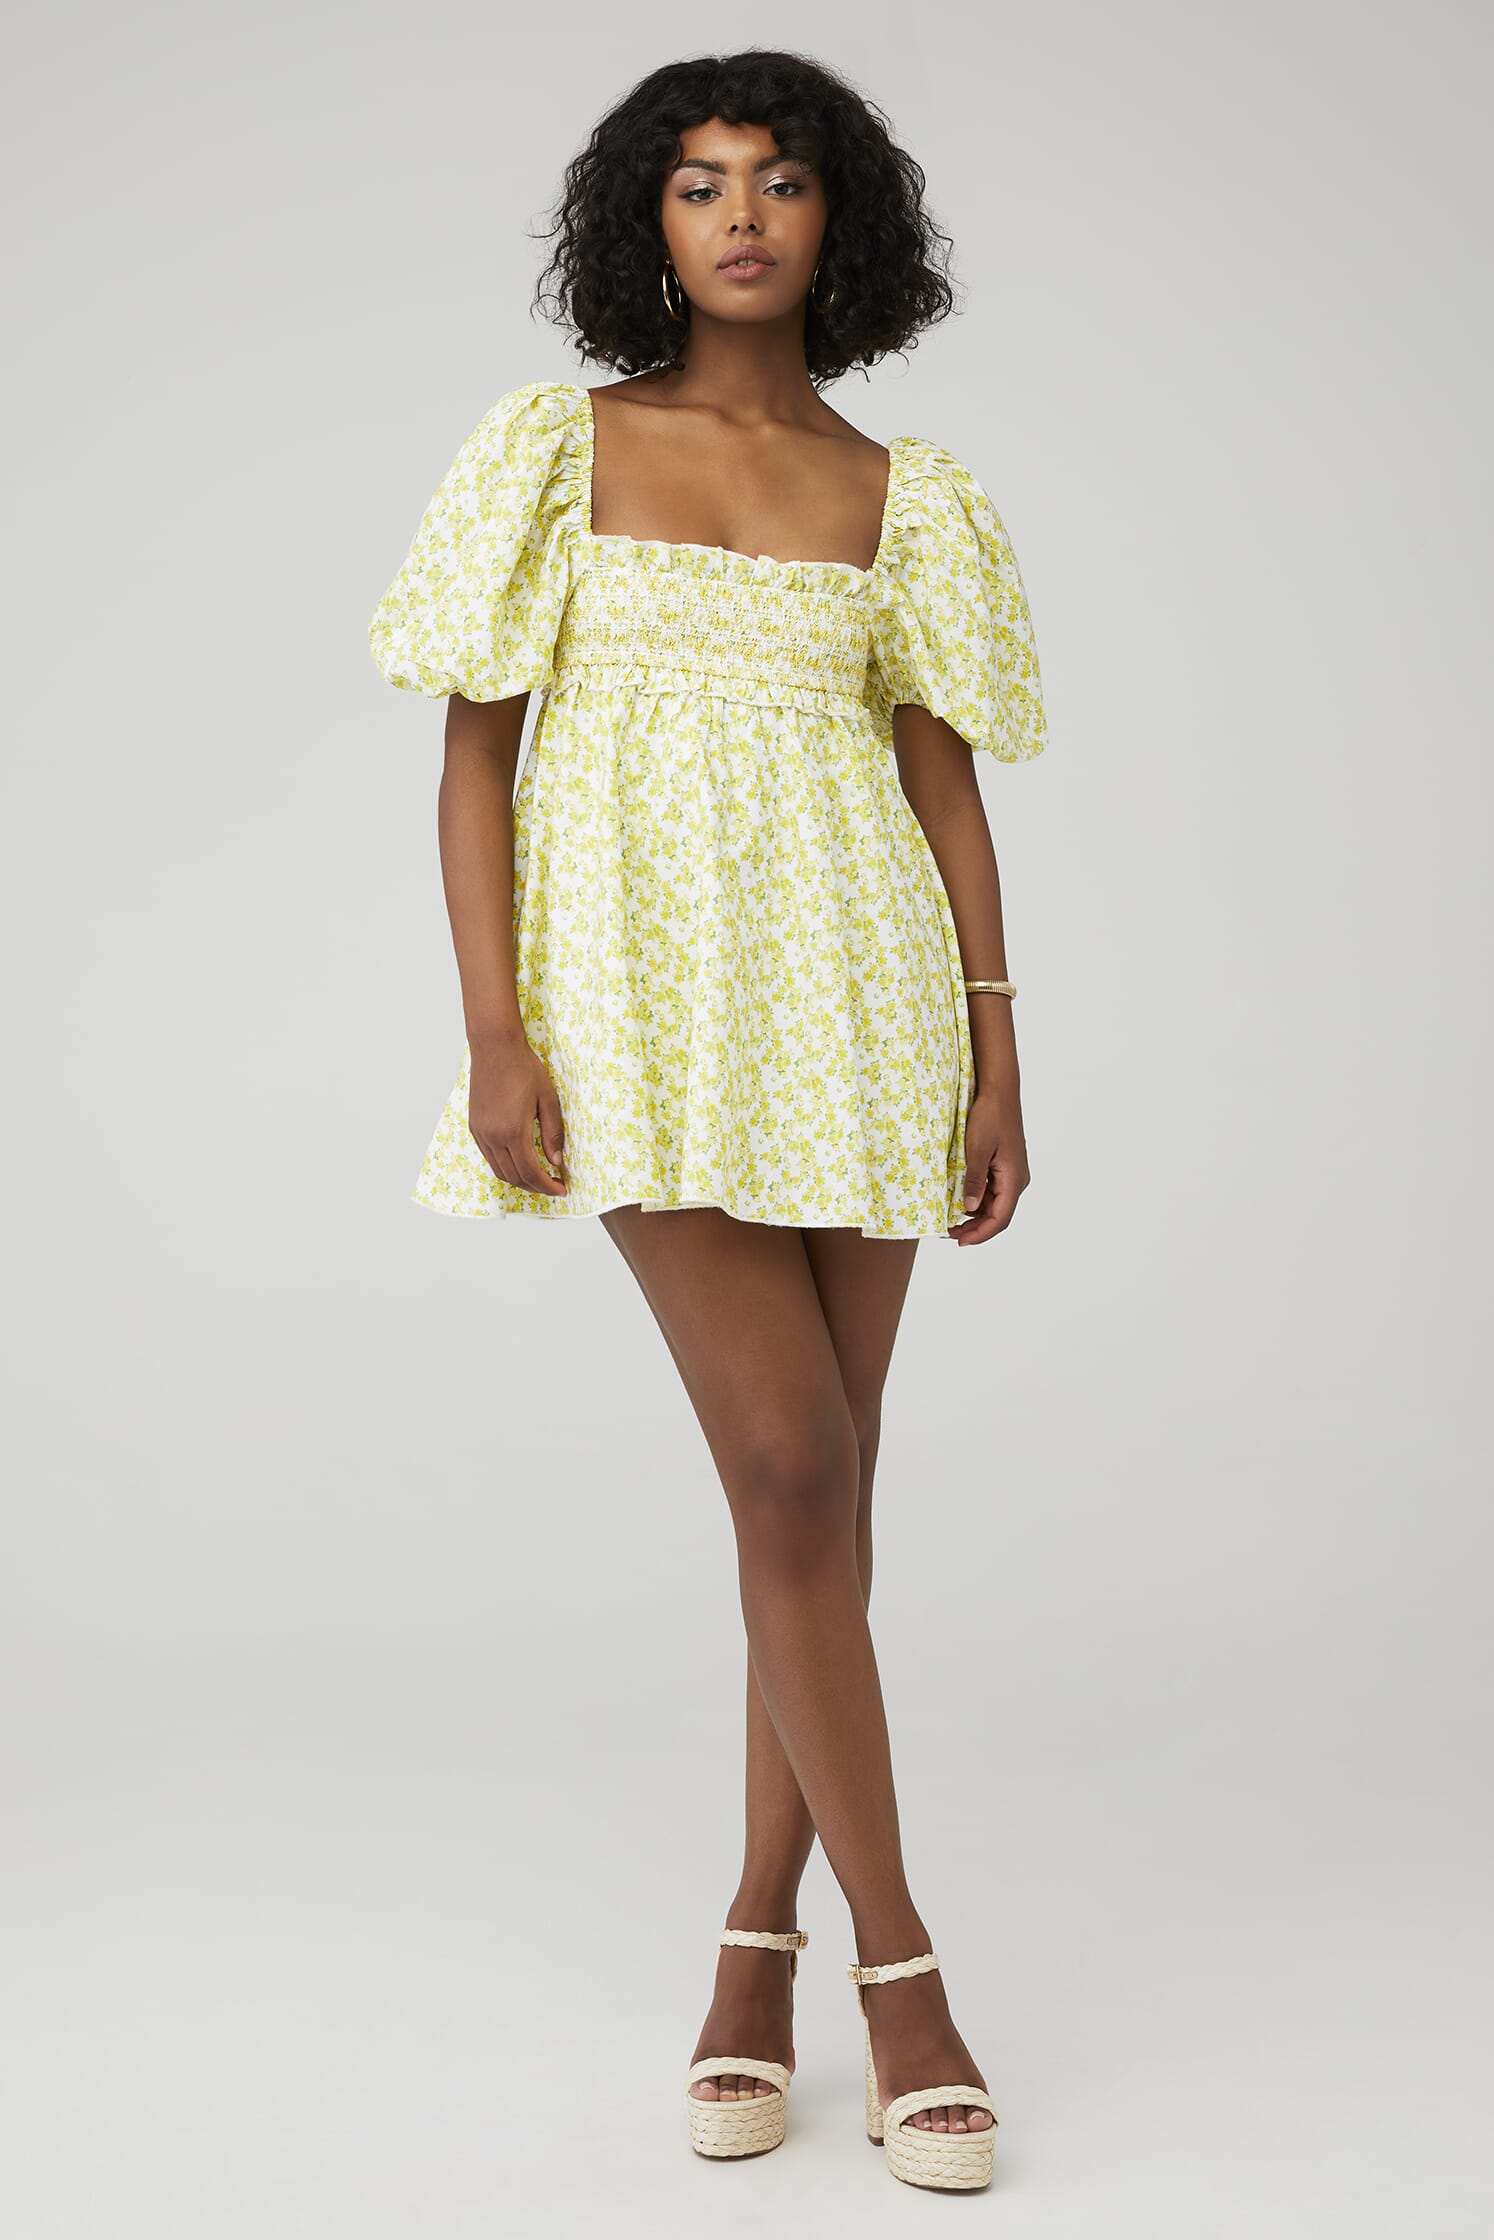 for Love & Lemons Cynthia Mini Dress - Size L